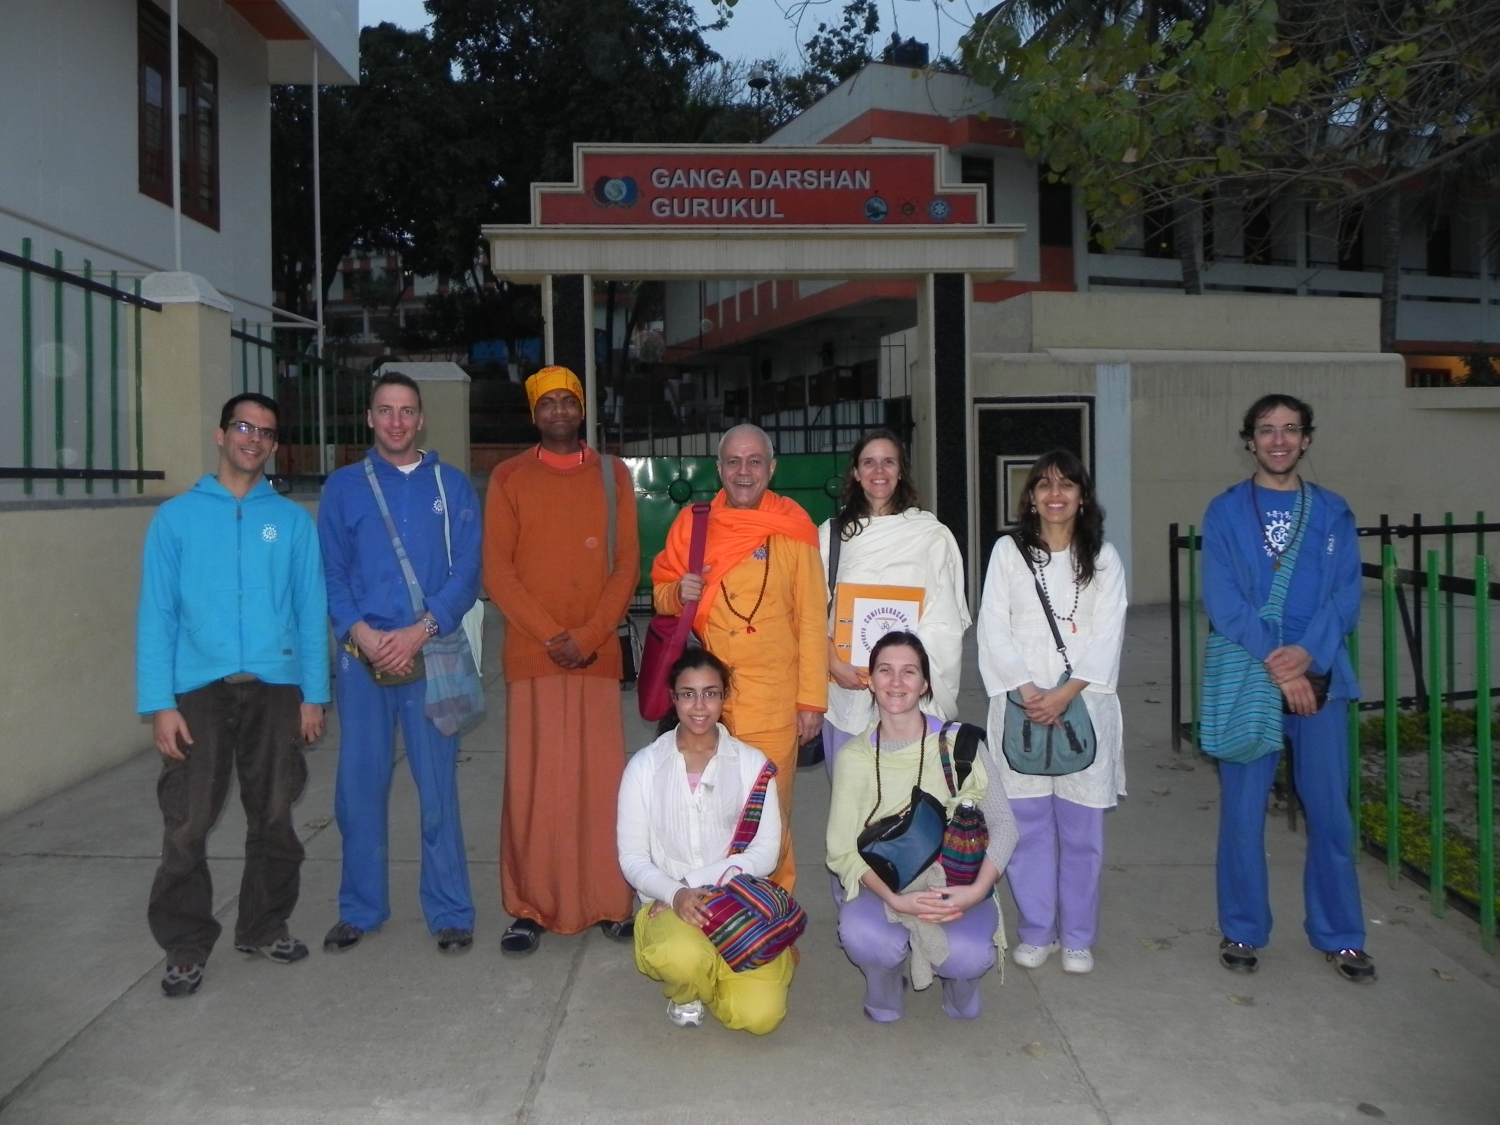 Encuentro de H.H. Jagat Guru Amrta Sūryānanda Mahā Rāja con Svámin Súryaprakash y Svámin Niranjanánanda - Bihar School of Yoga, Munger, India – 2011